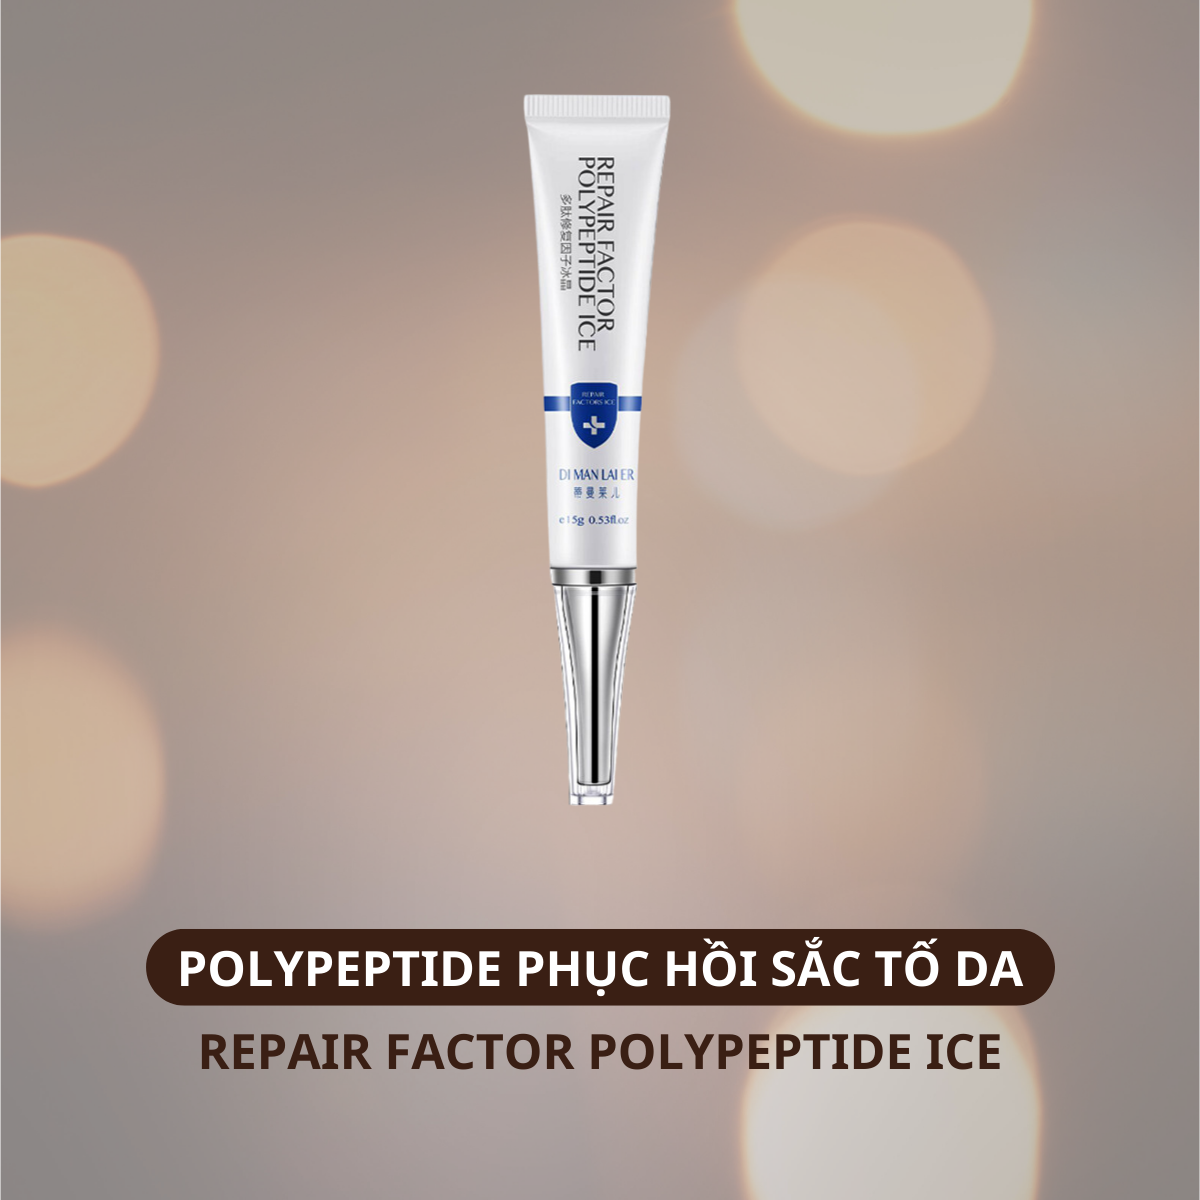 Repair Factor Polypeptide Ice Ultra Spot– Polypeptide Phục Hồi Sắc Tố Da Ultra Spot làm dịu da nhanh chóng sử dụng sau khi làm kỹ thuật chiết tách sắc tố, tai nạn phỏng xe